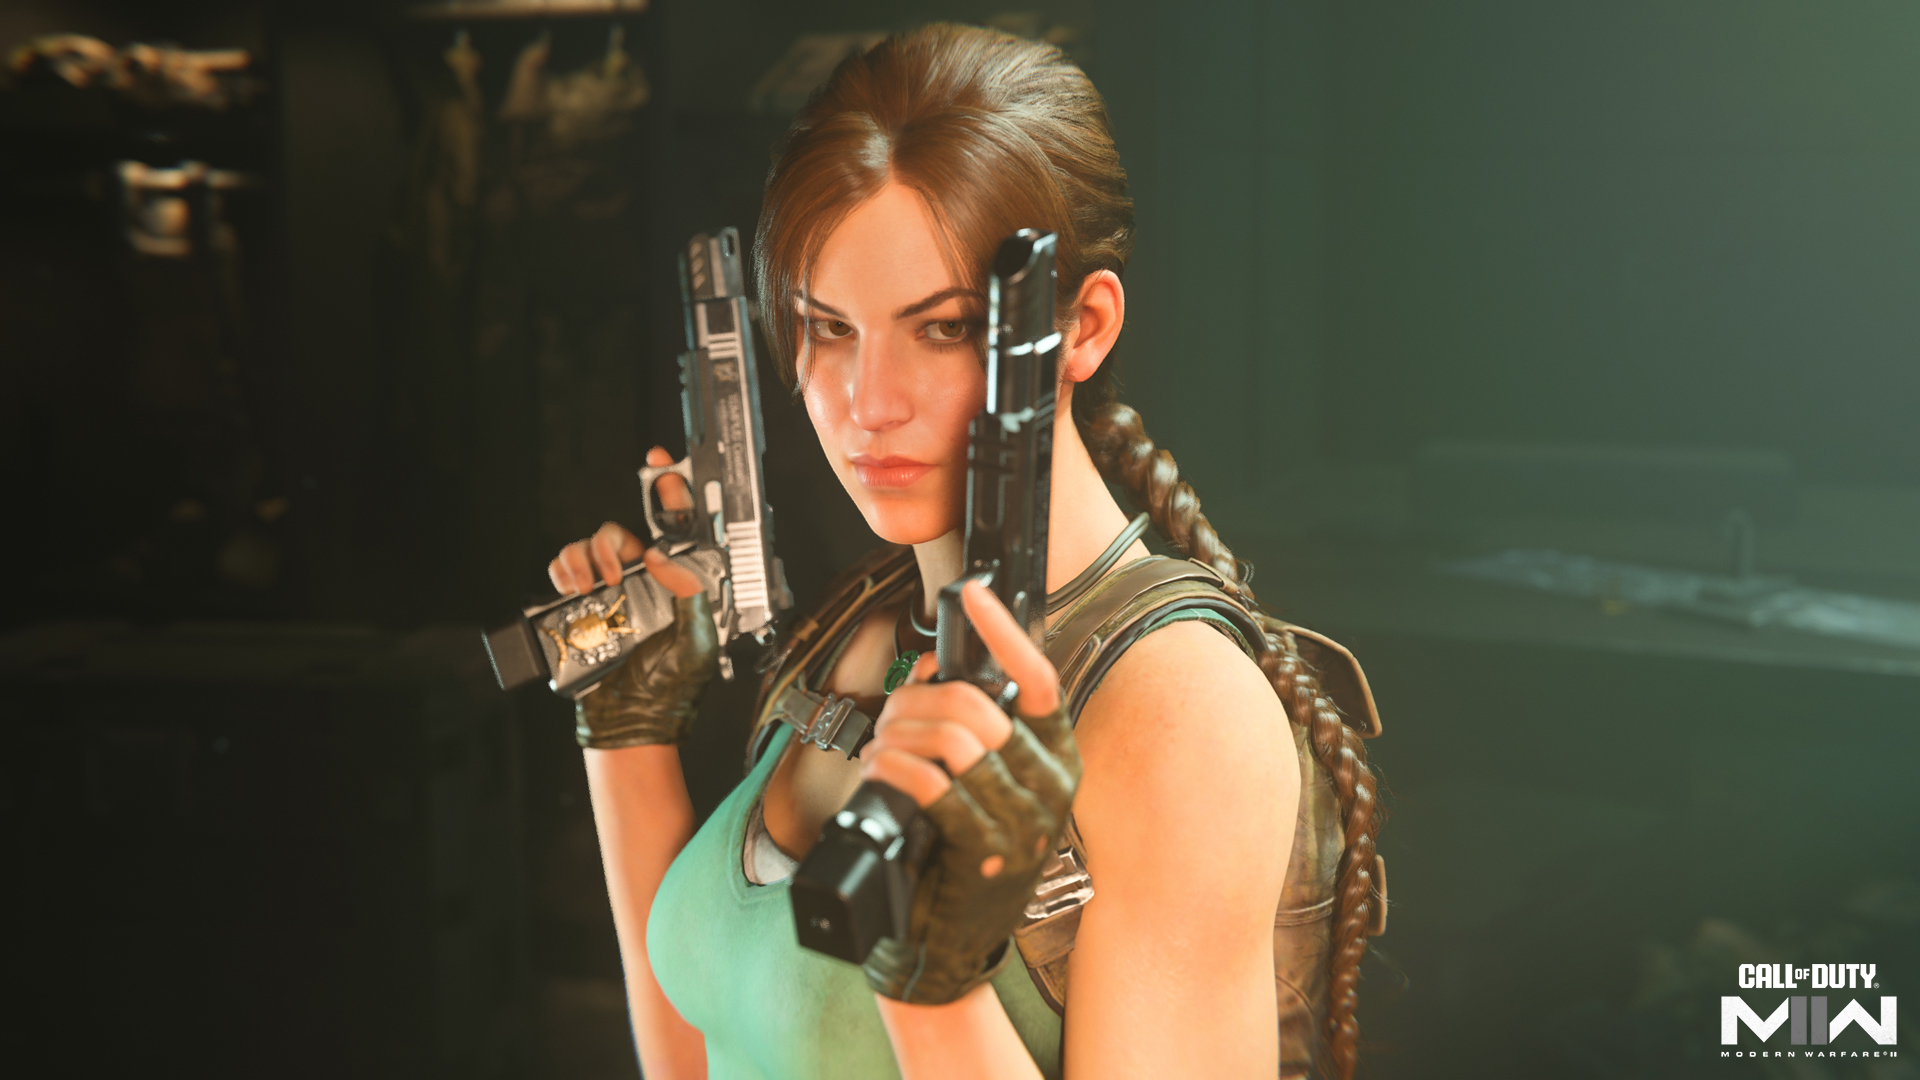 Imagem mostra Lara Croft, de Tomb Raider, como a nova operadora de Call of Duty